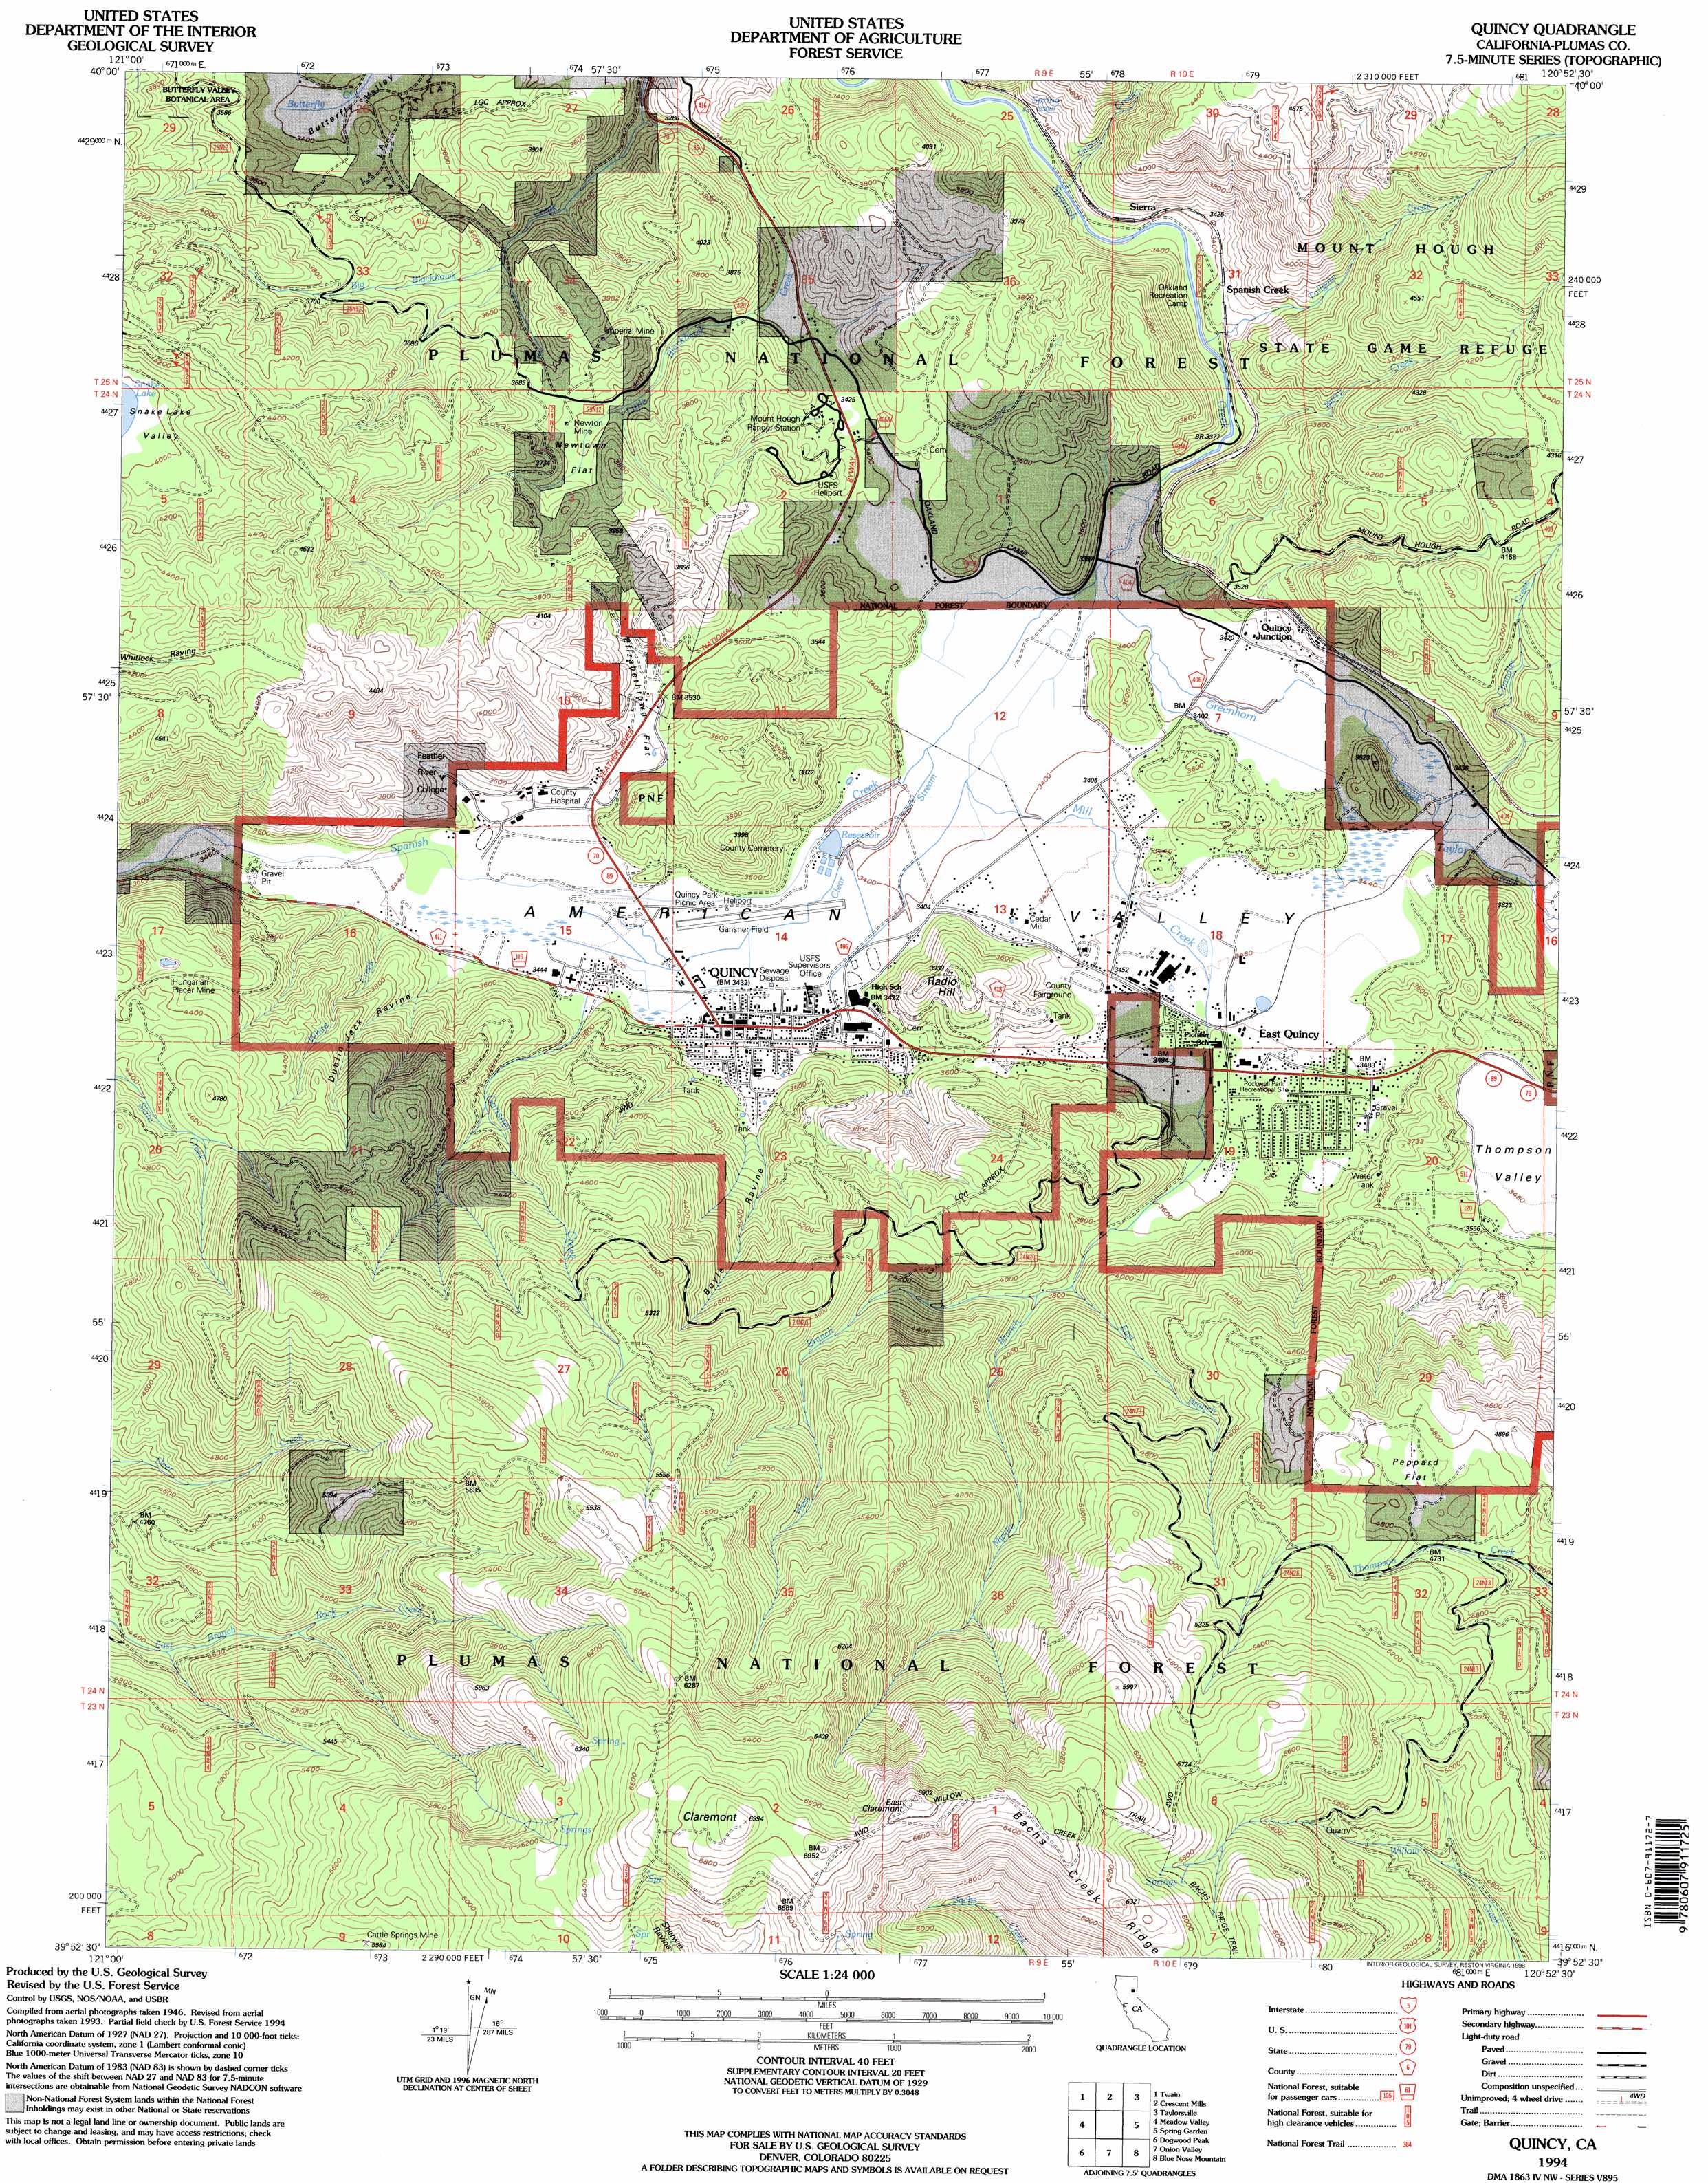 Quincy topographic map, CA - USGS Topo Quad 39120h8